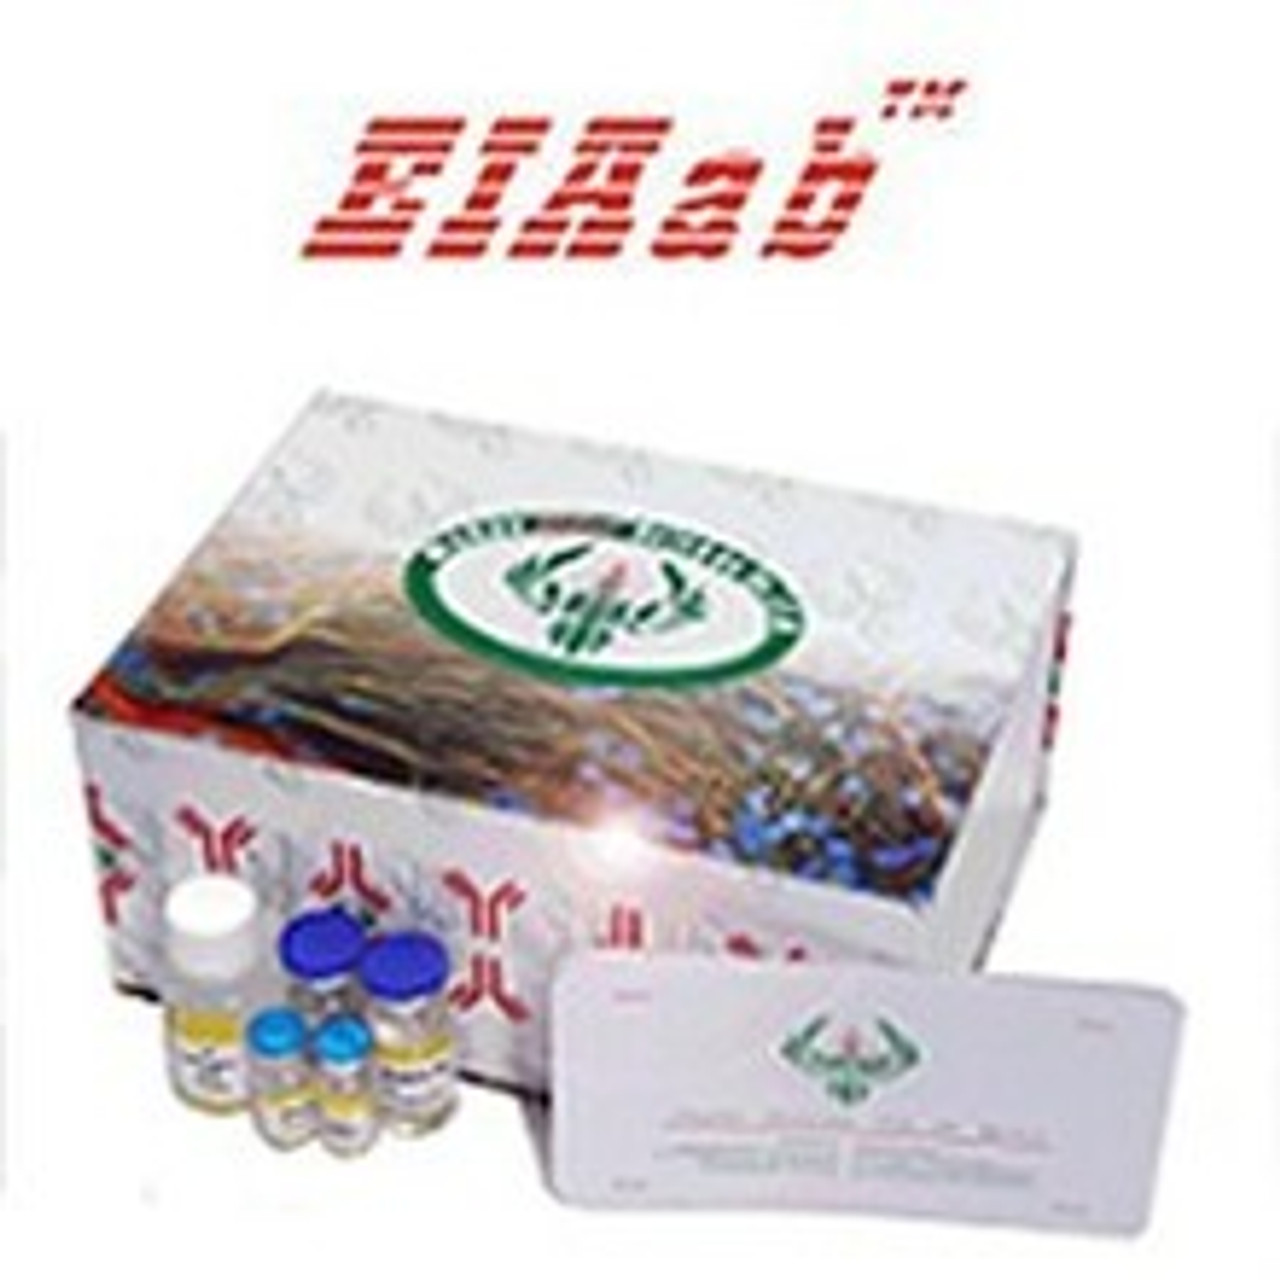 Human CHIT1/Chitotriosidase-1 ELISA Kit